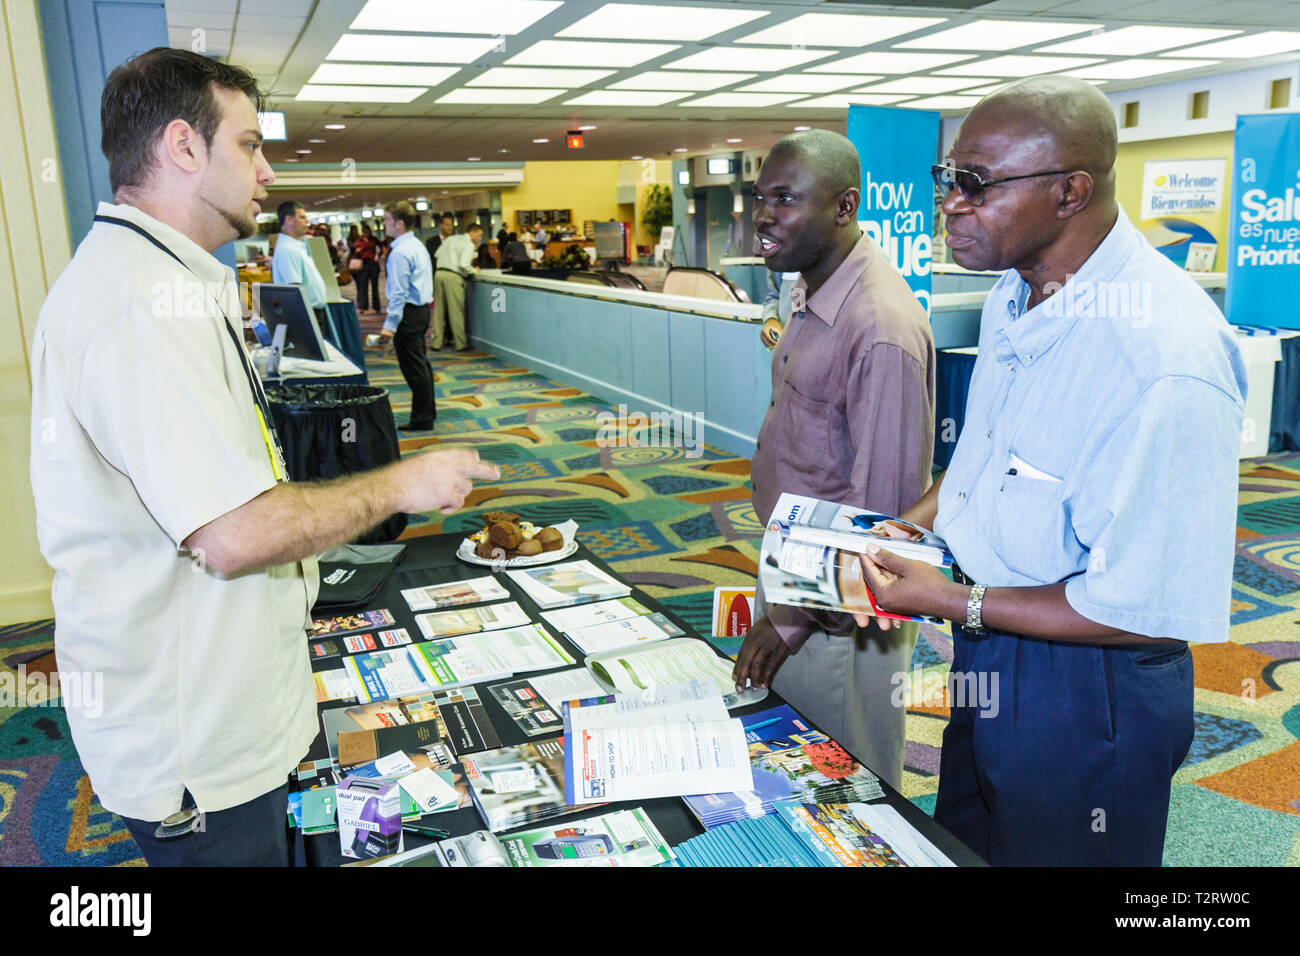 Miami Beach Florida,Miami Dade,Miami Beach Convention Center,centro,azione comunitaria per ripristinare la stabilità economica,nero,uomo etnico ispanico maschile, Foto Stock